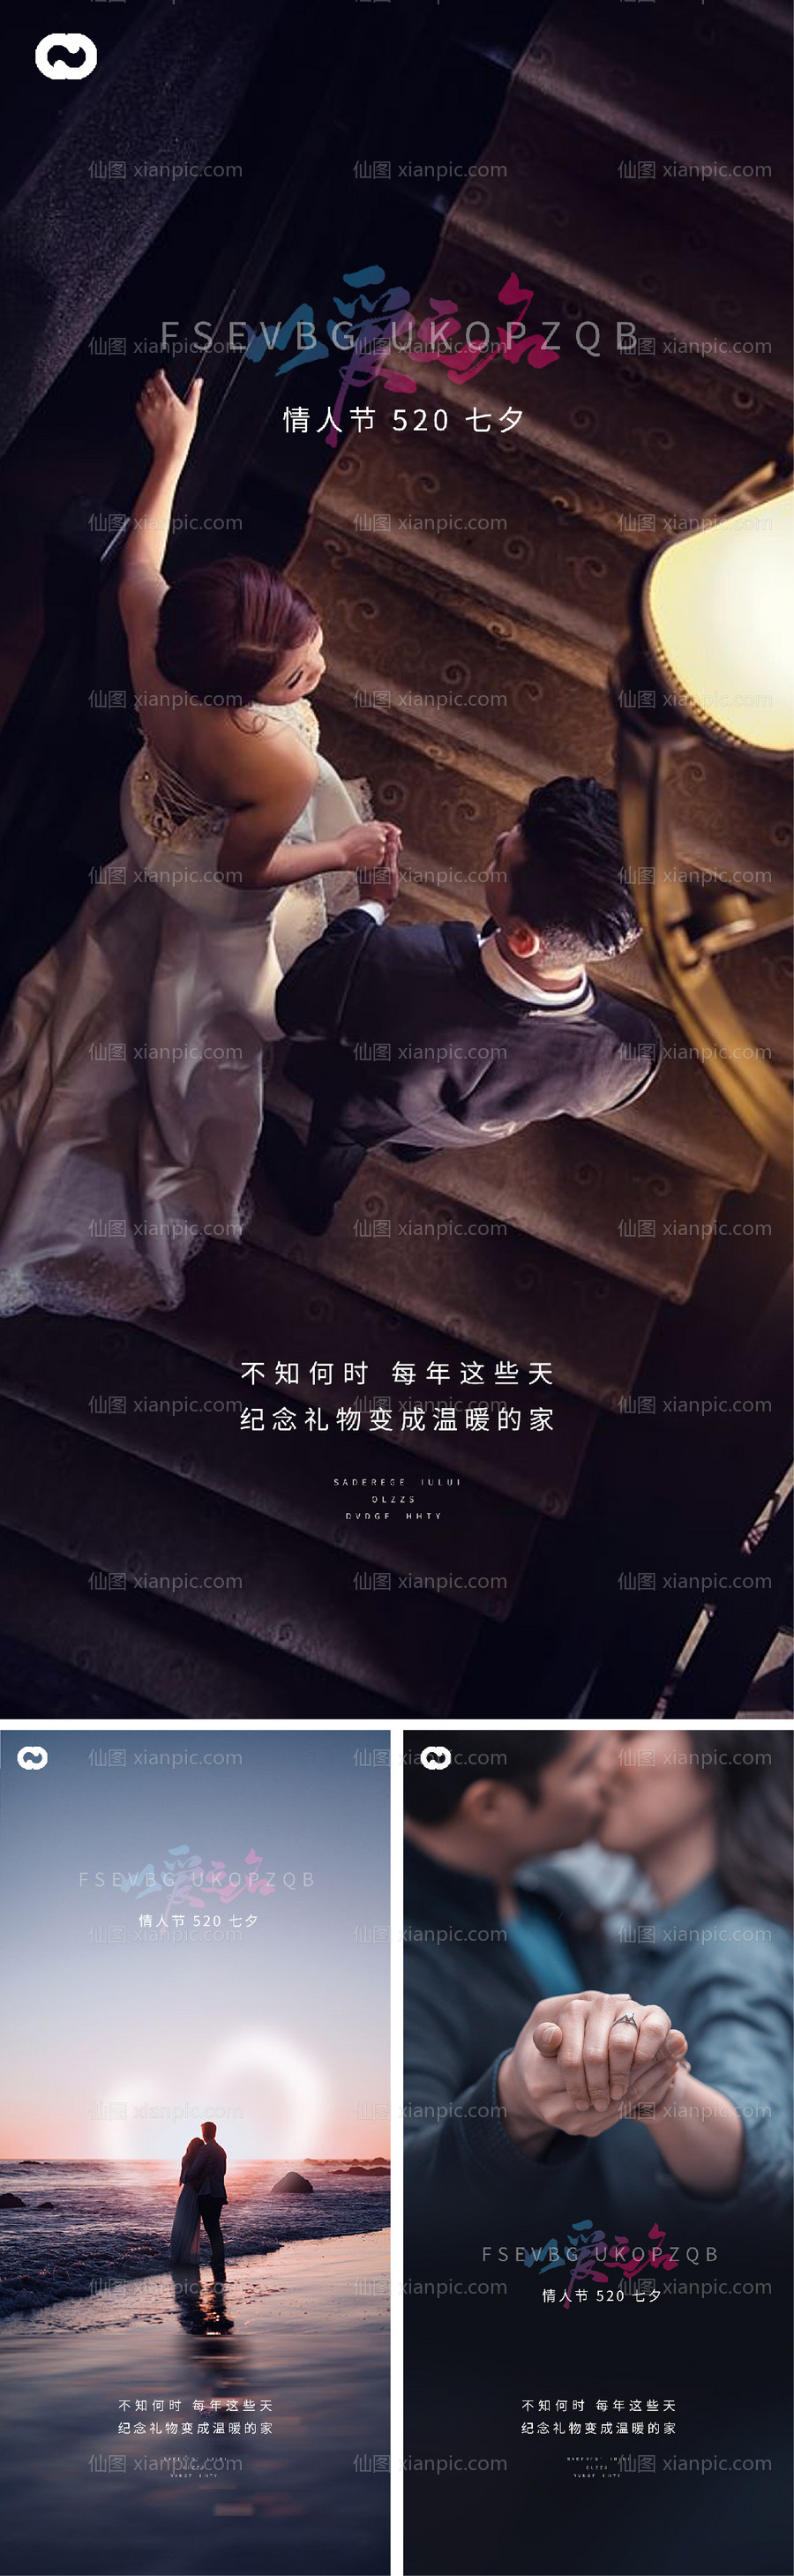 素材乐-七夕情人节系列微信海报